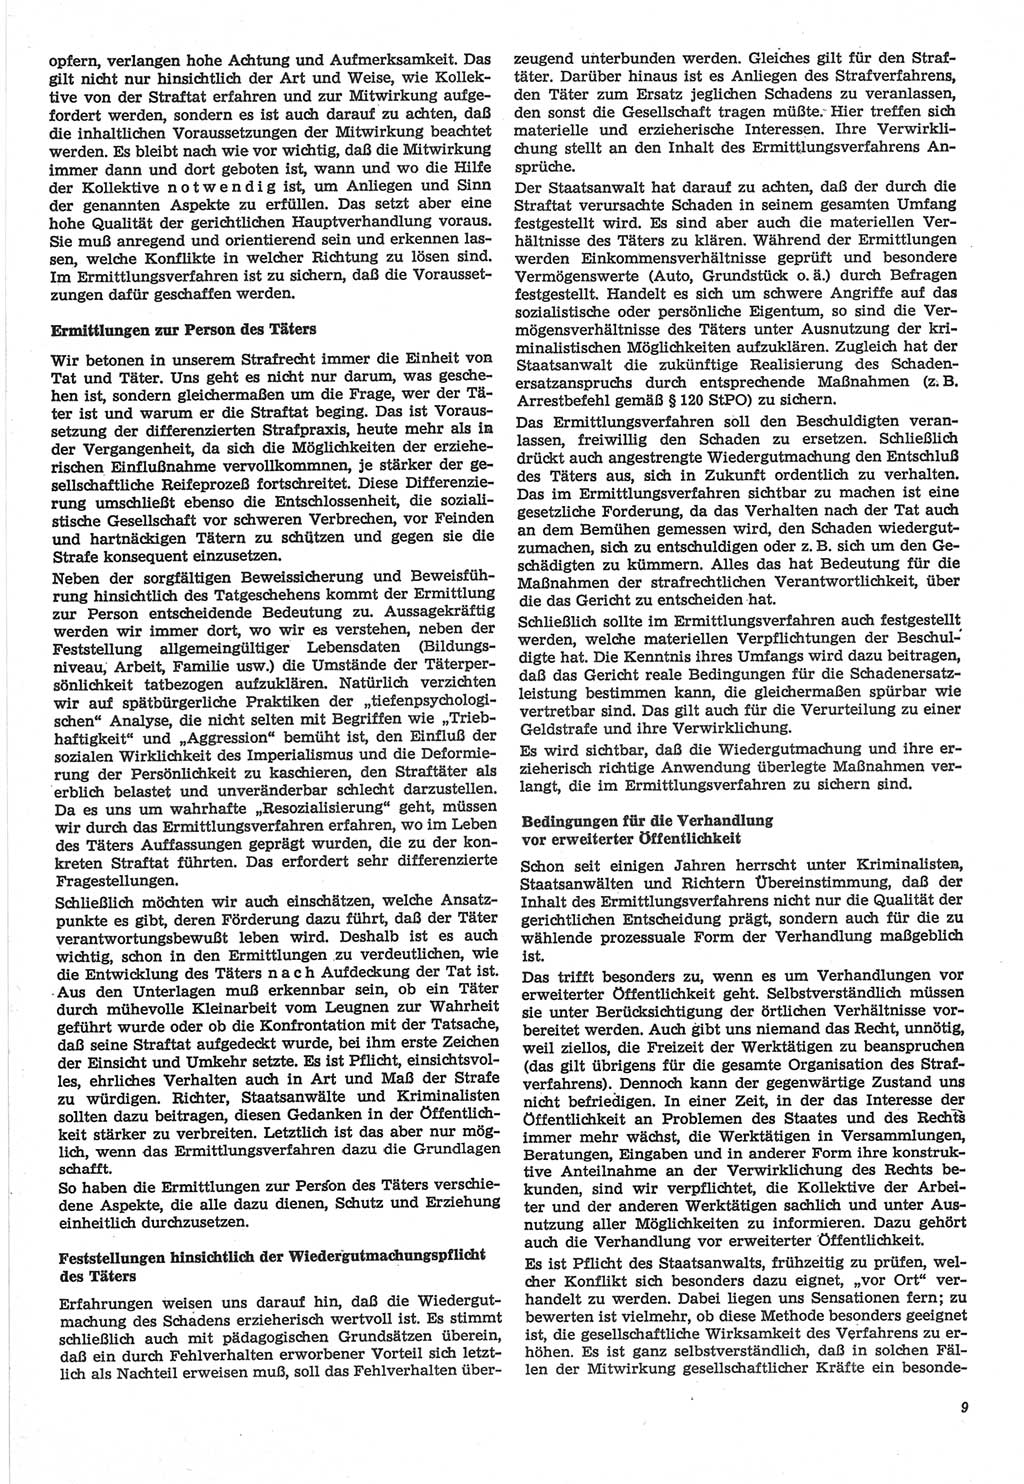 Neue Justiz (NJ), Zeitschrift für Recht und Rechtswissenschaft-Zeitschrift, sozialistisches Recht und Gesetzlichkeit, 31. Jahrgang 1977, Seite 9 (NJ DDR 1977, S. 9)